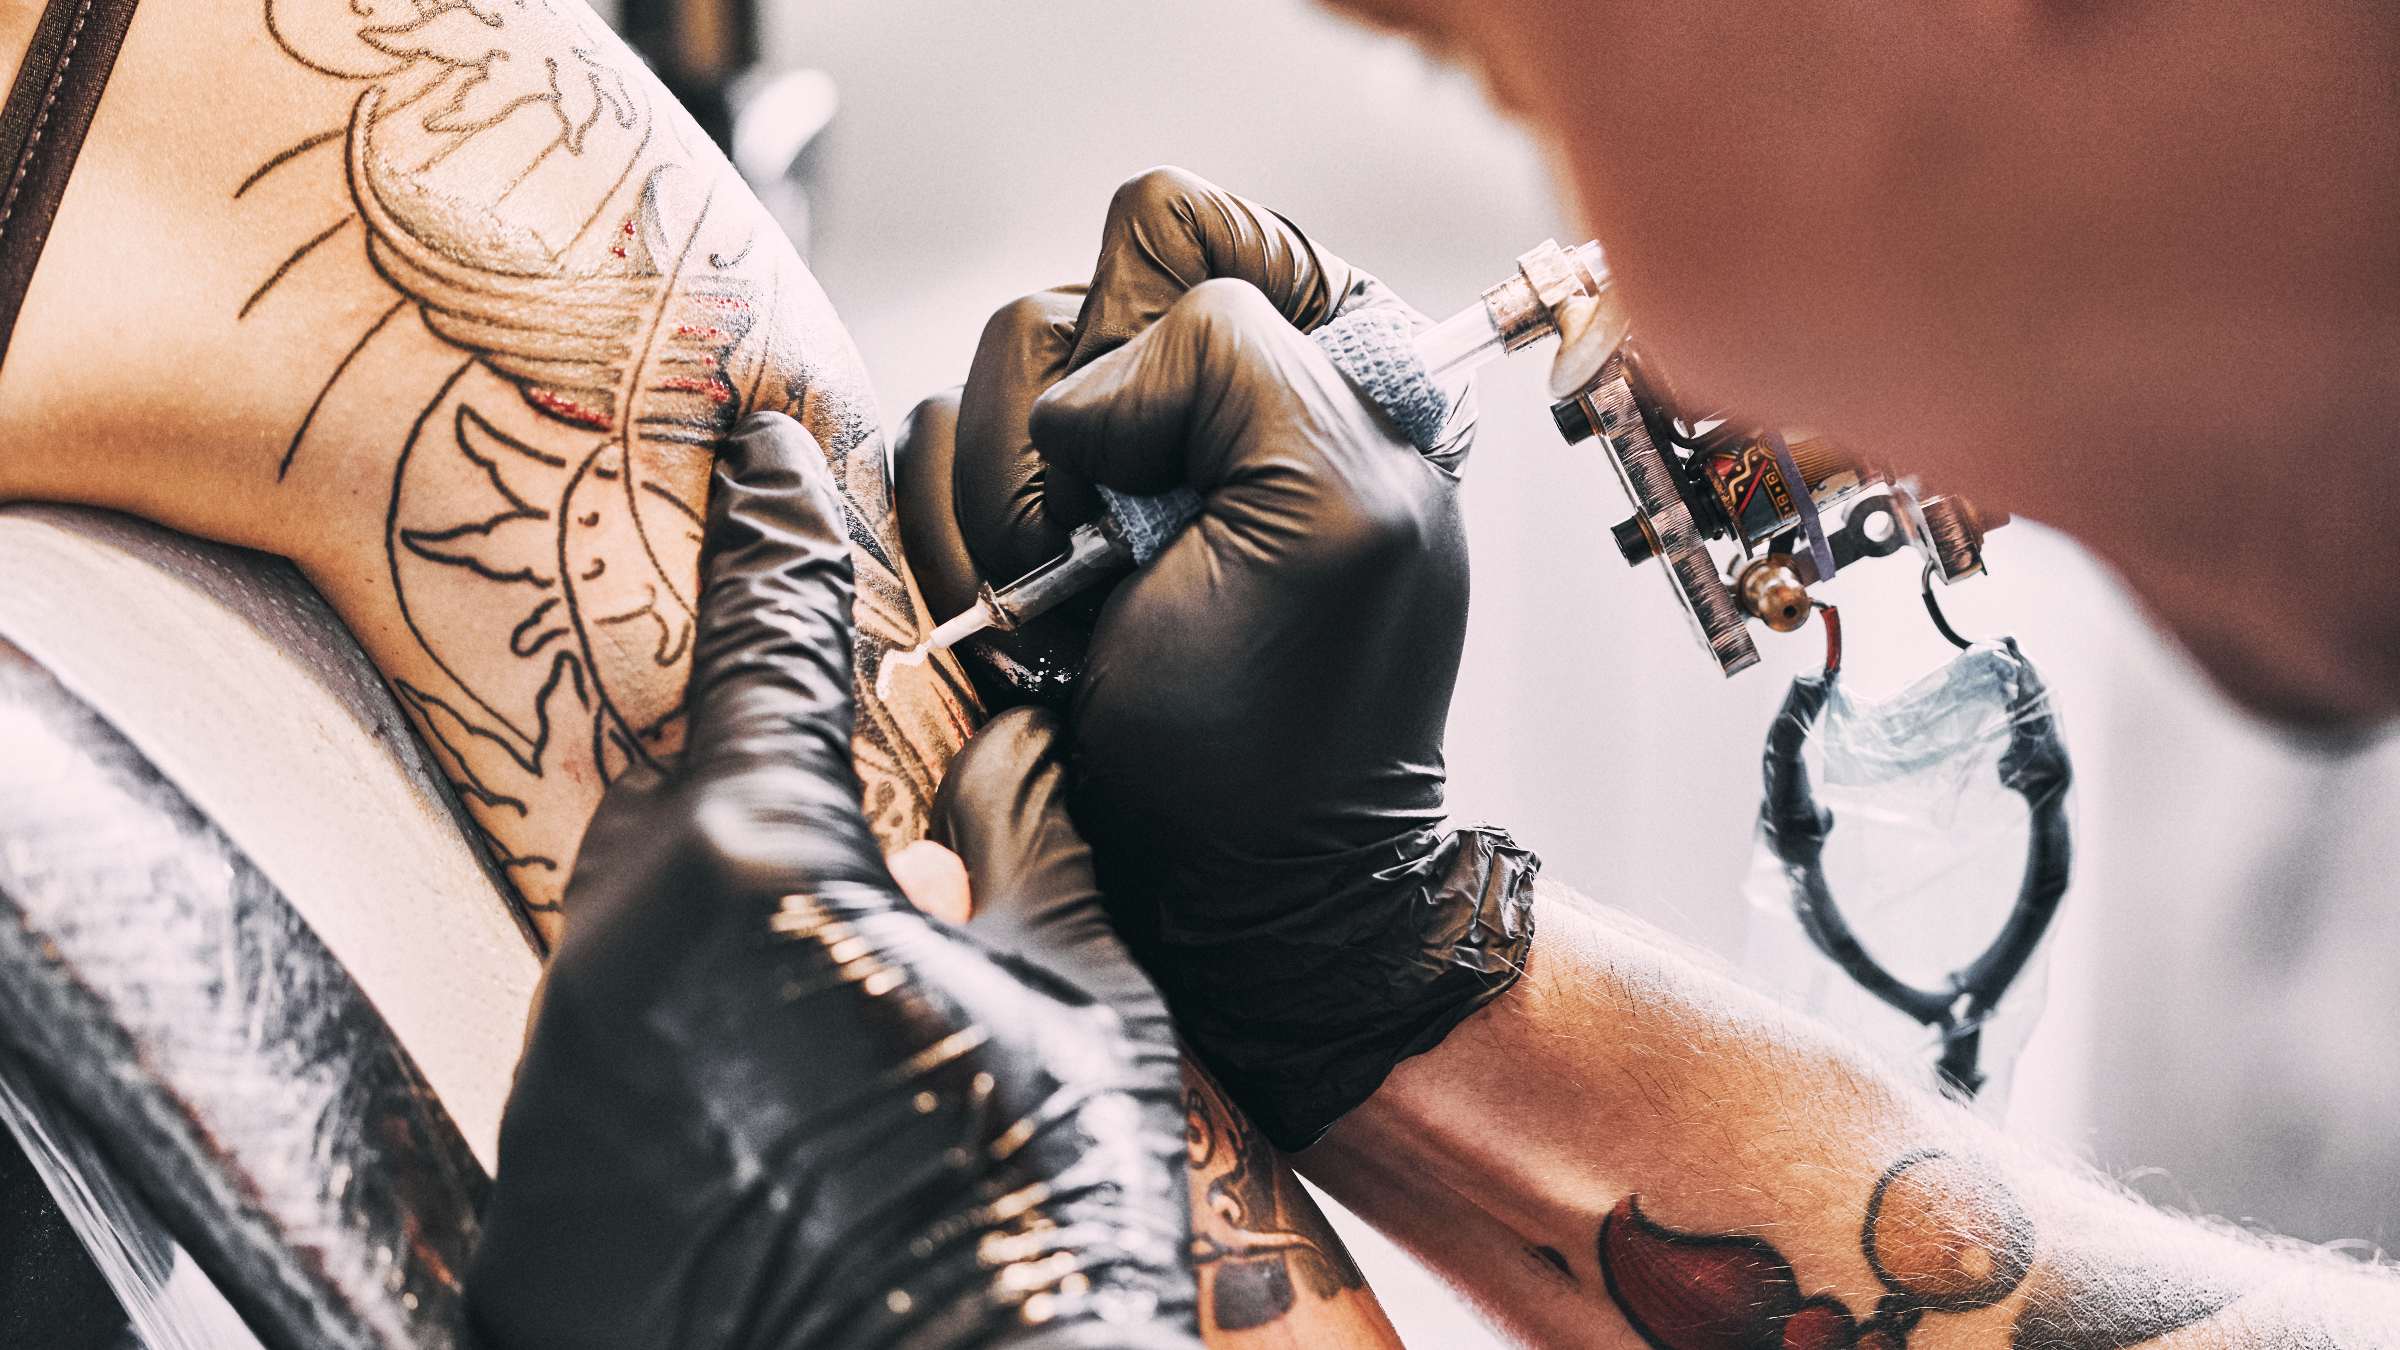 Tattoo artist making a tattoo on a shoulder